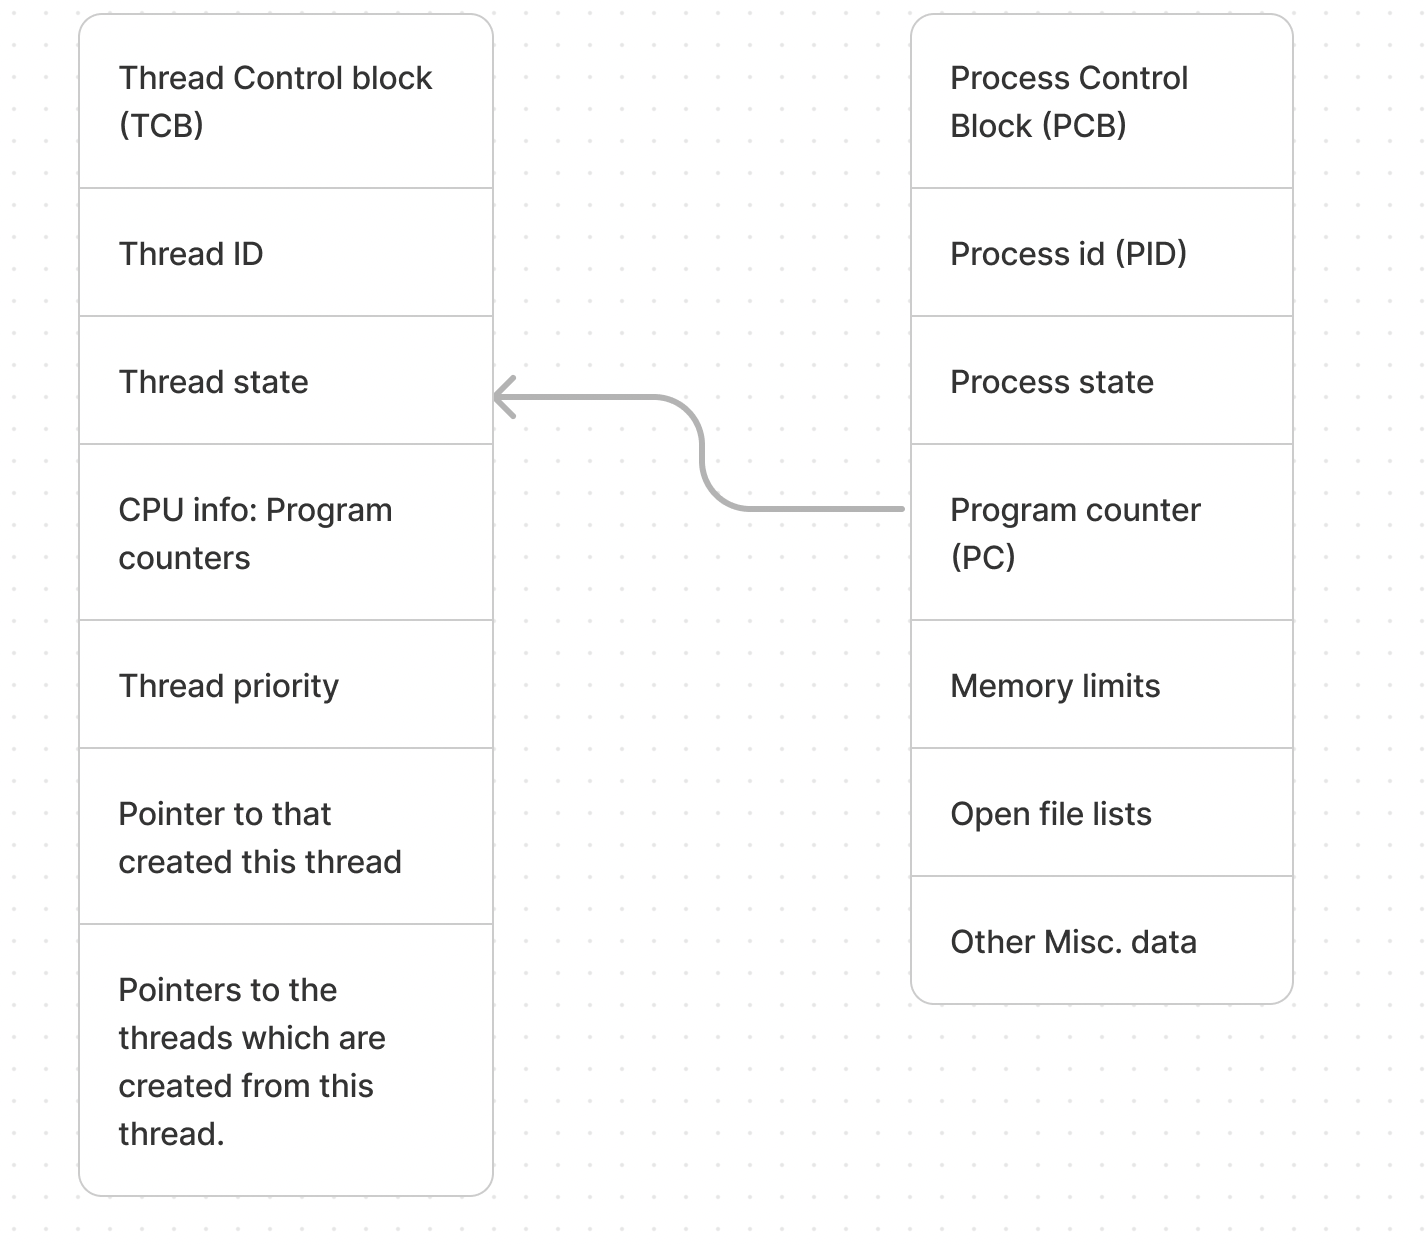 Process control block